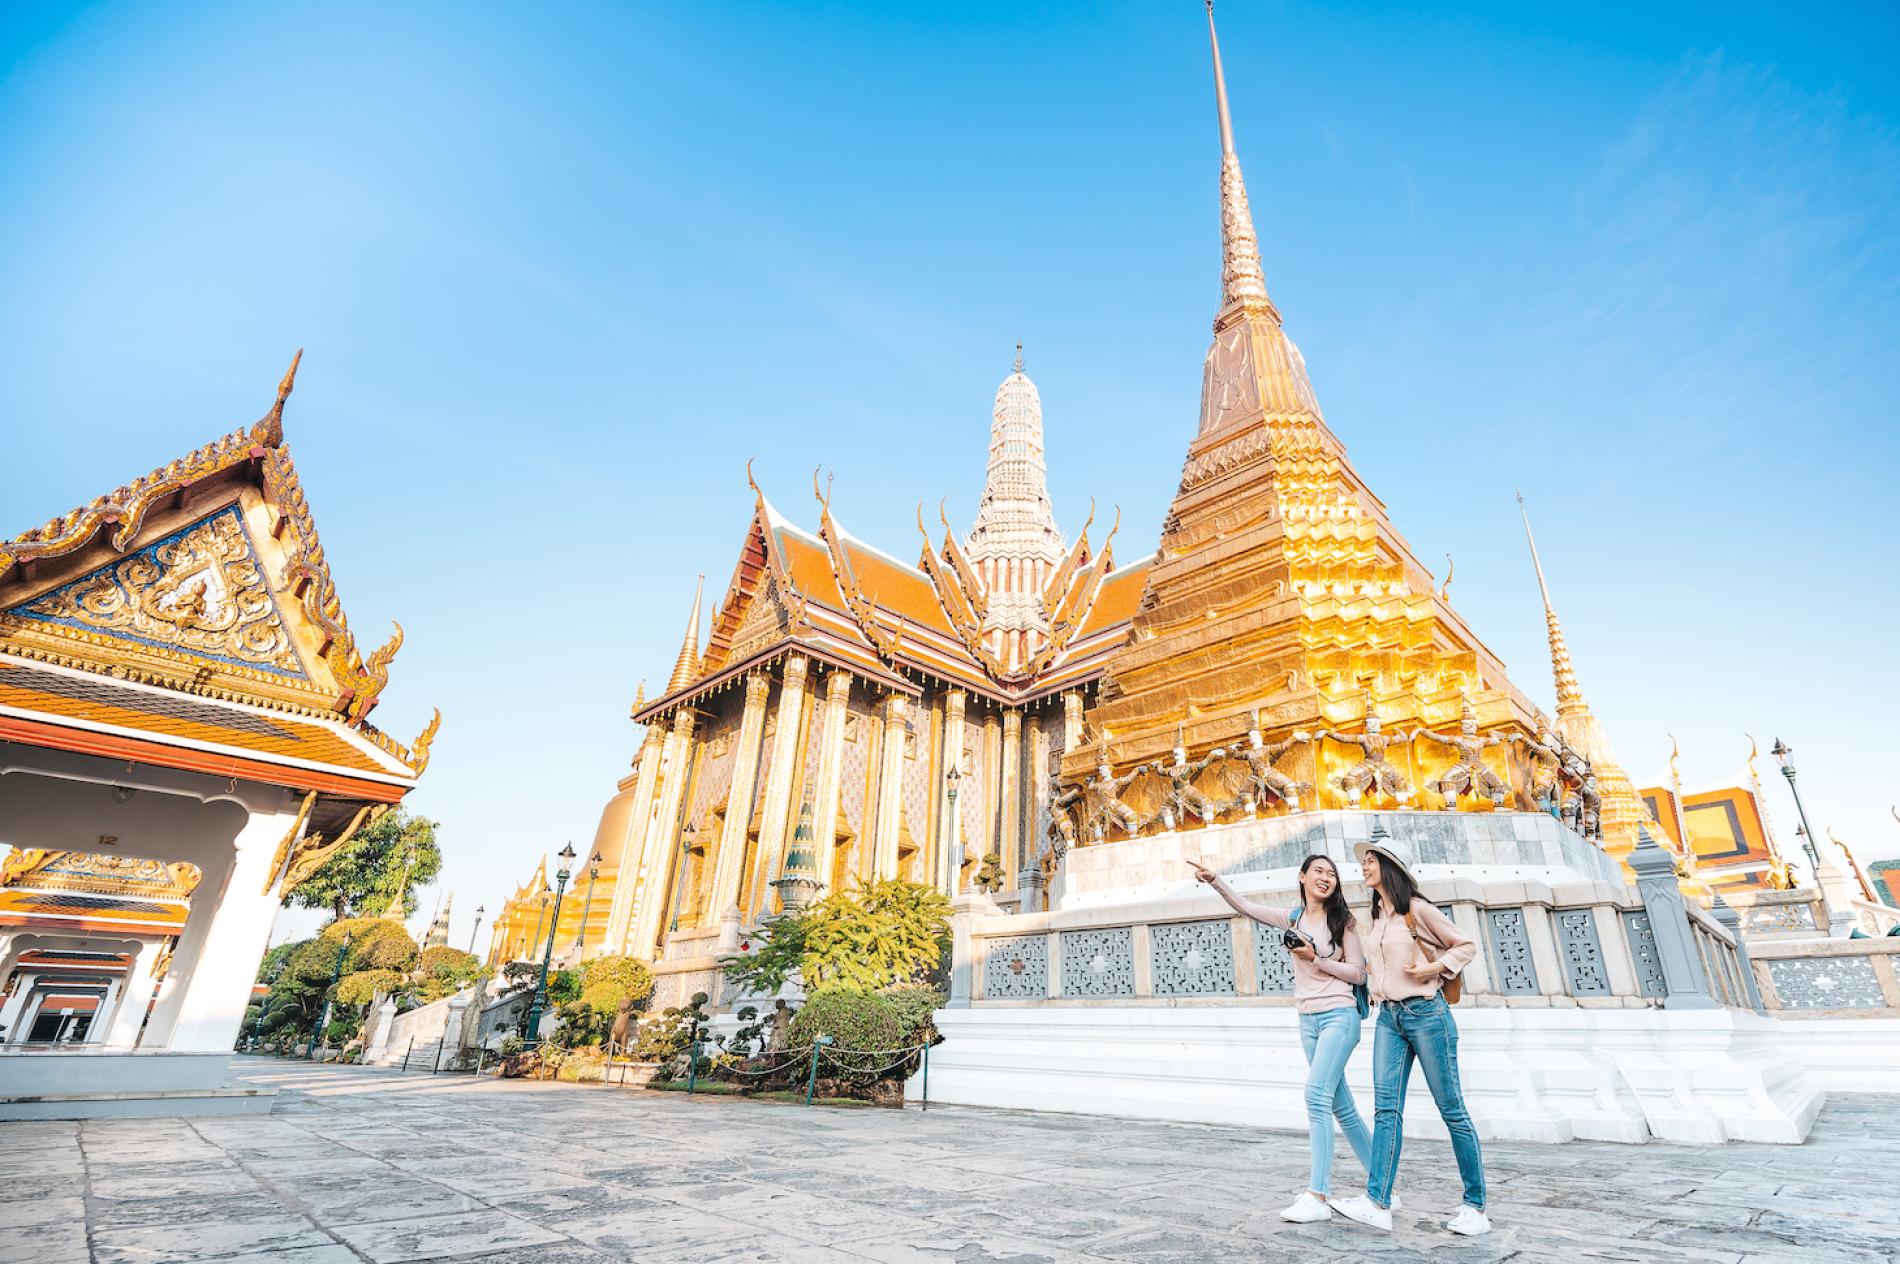 Giá vé vào Hoàng Cung Thái Lan viên ngọc của thủ đô Bangkok